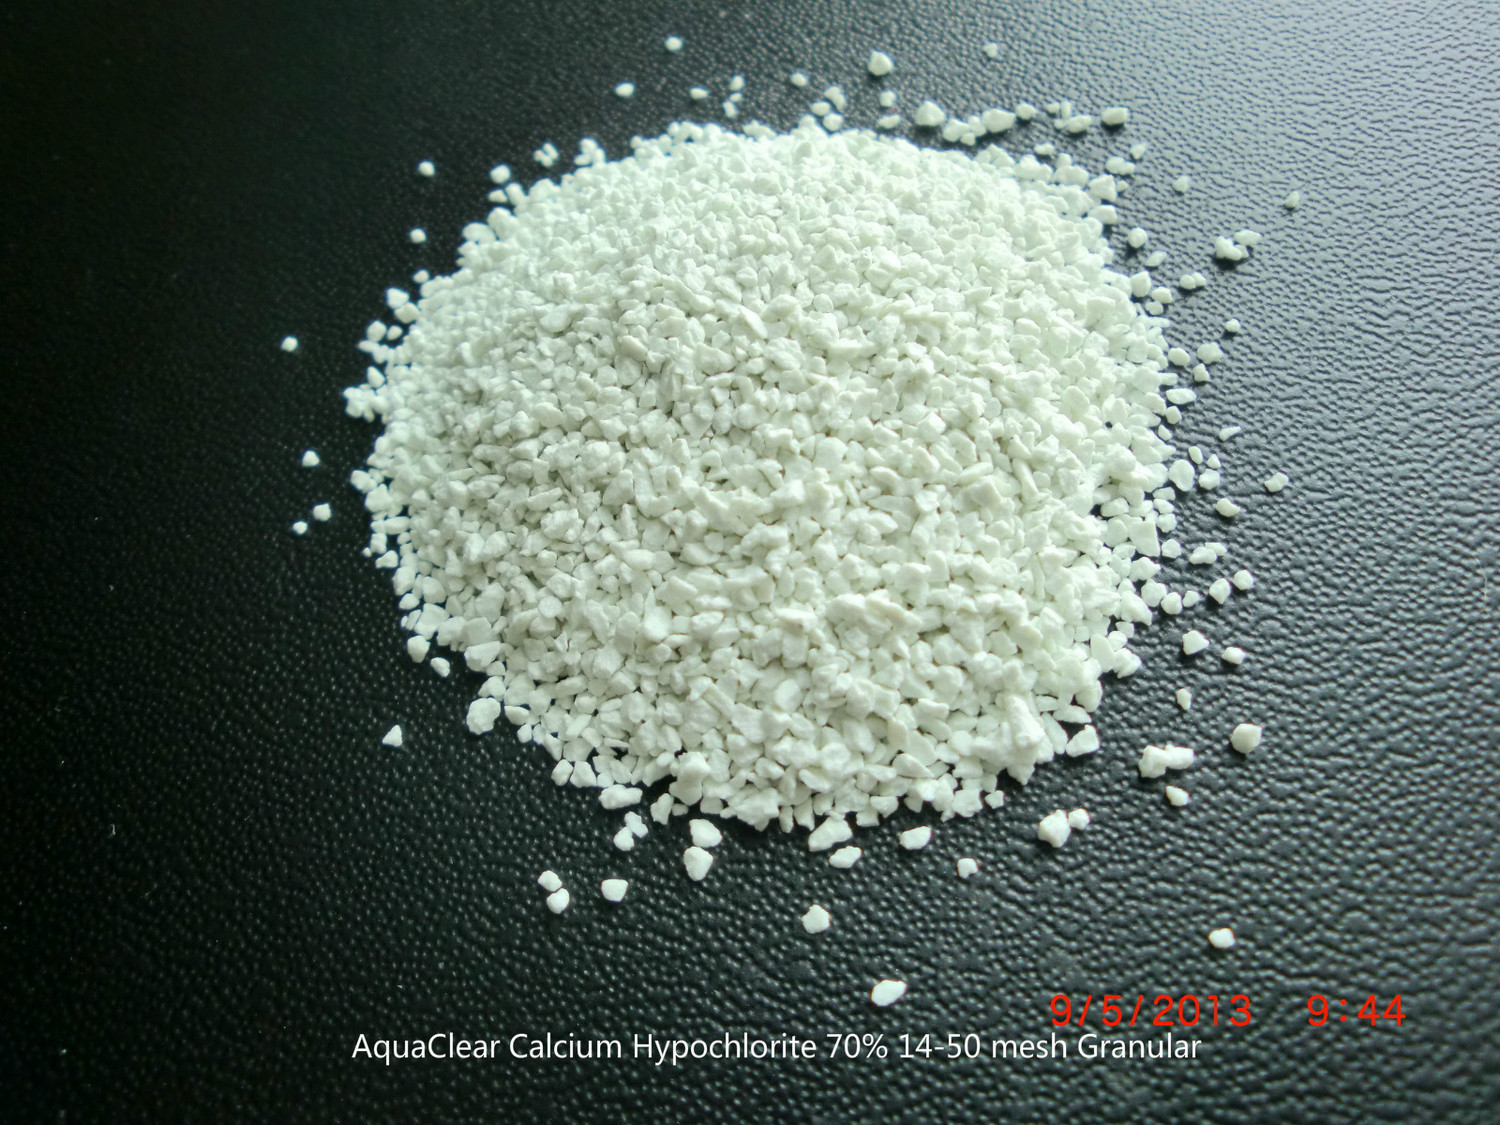 AquaClear Calcium Hypochlorite 70% 14-50 mesh Granular.jpg